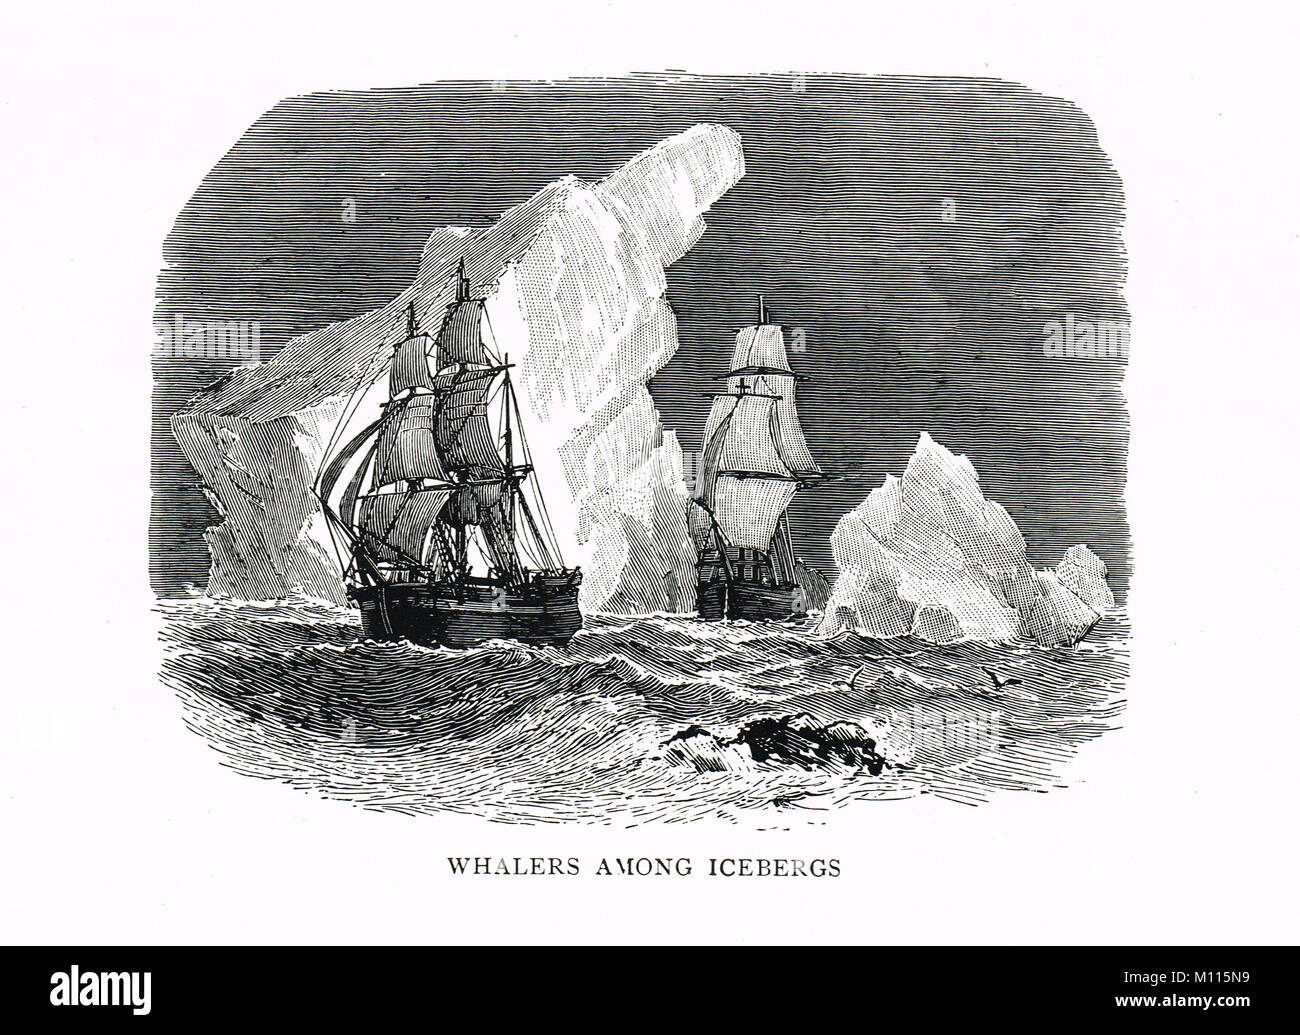 Baleinières parmi les icebergs Banque D'Images